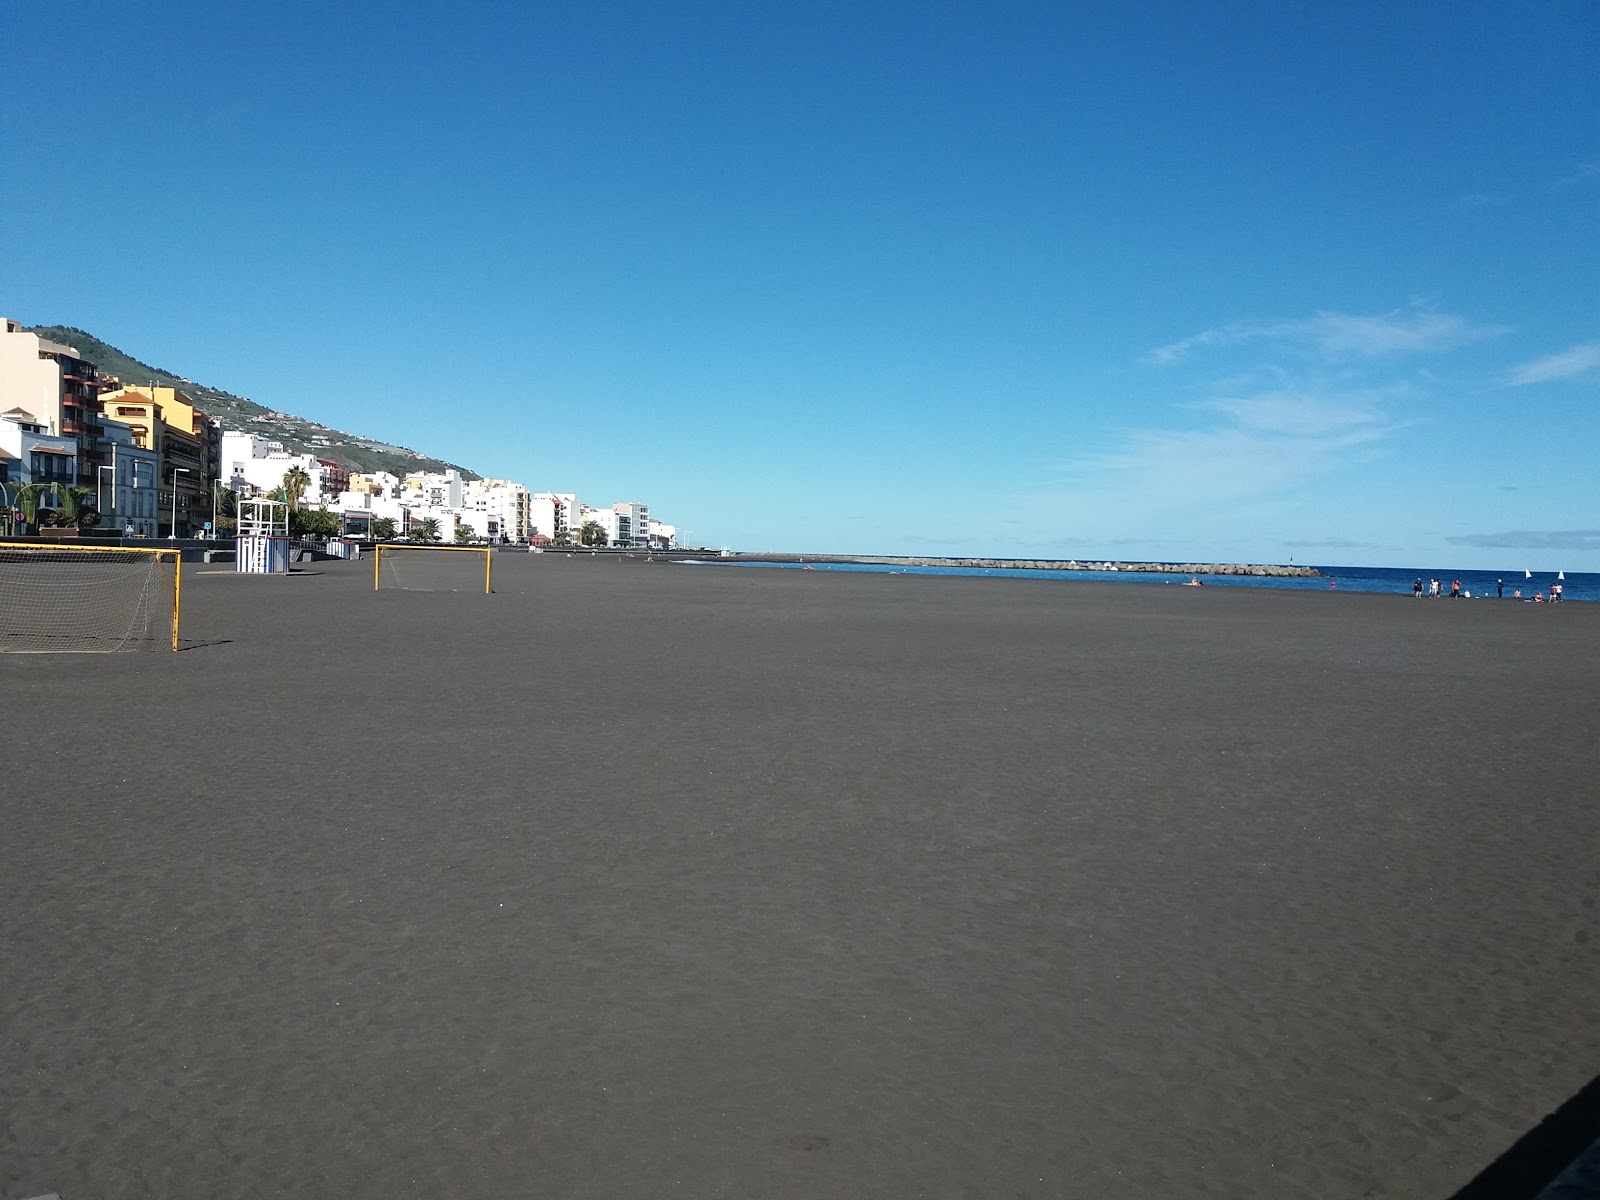 Foto af Playa de Santa Cruz - populært sted blandt afslapningskendere